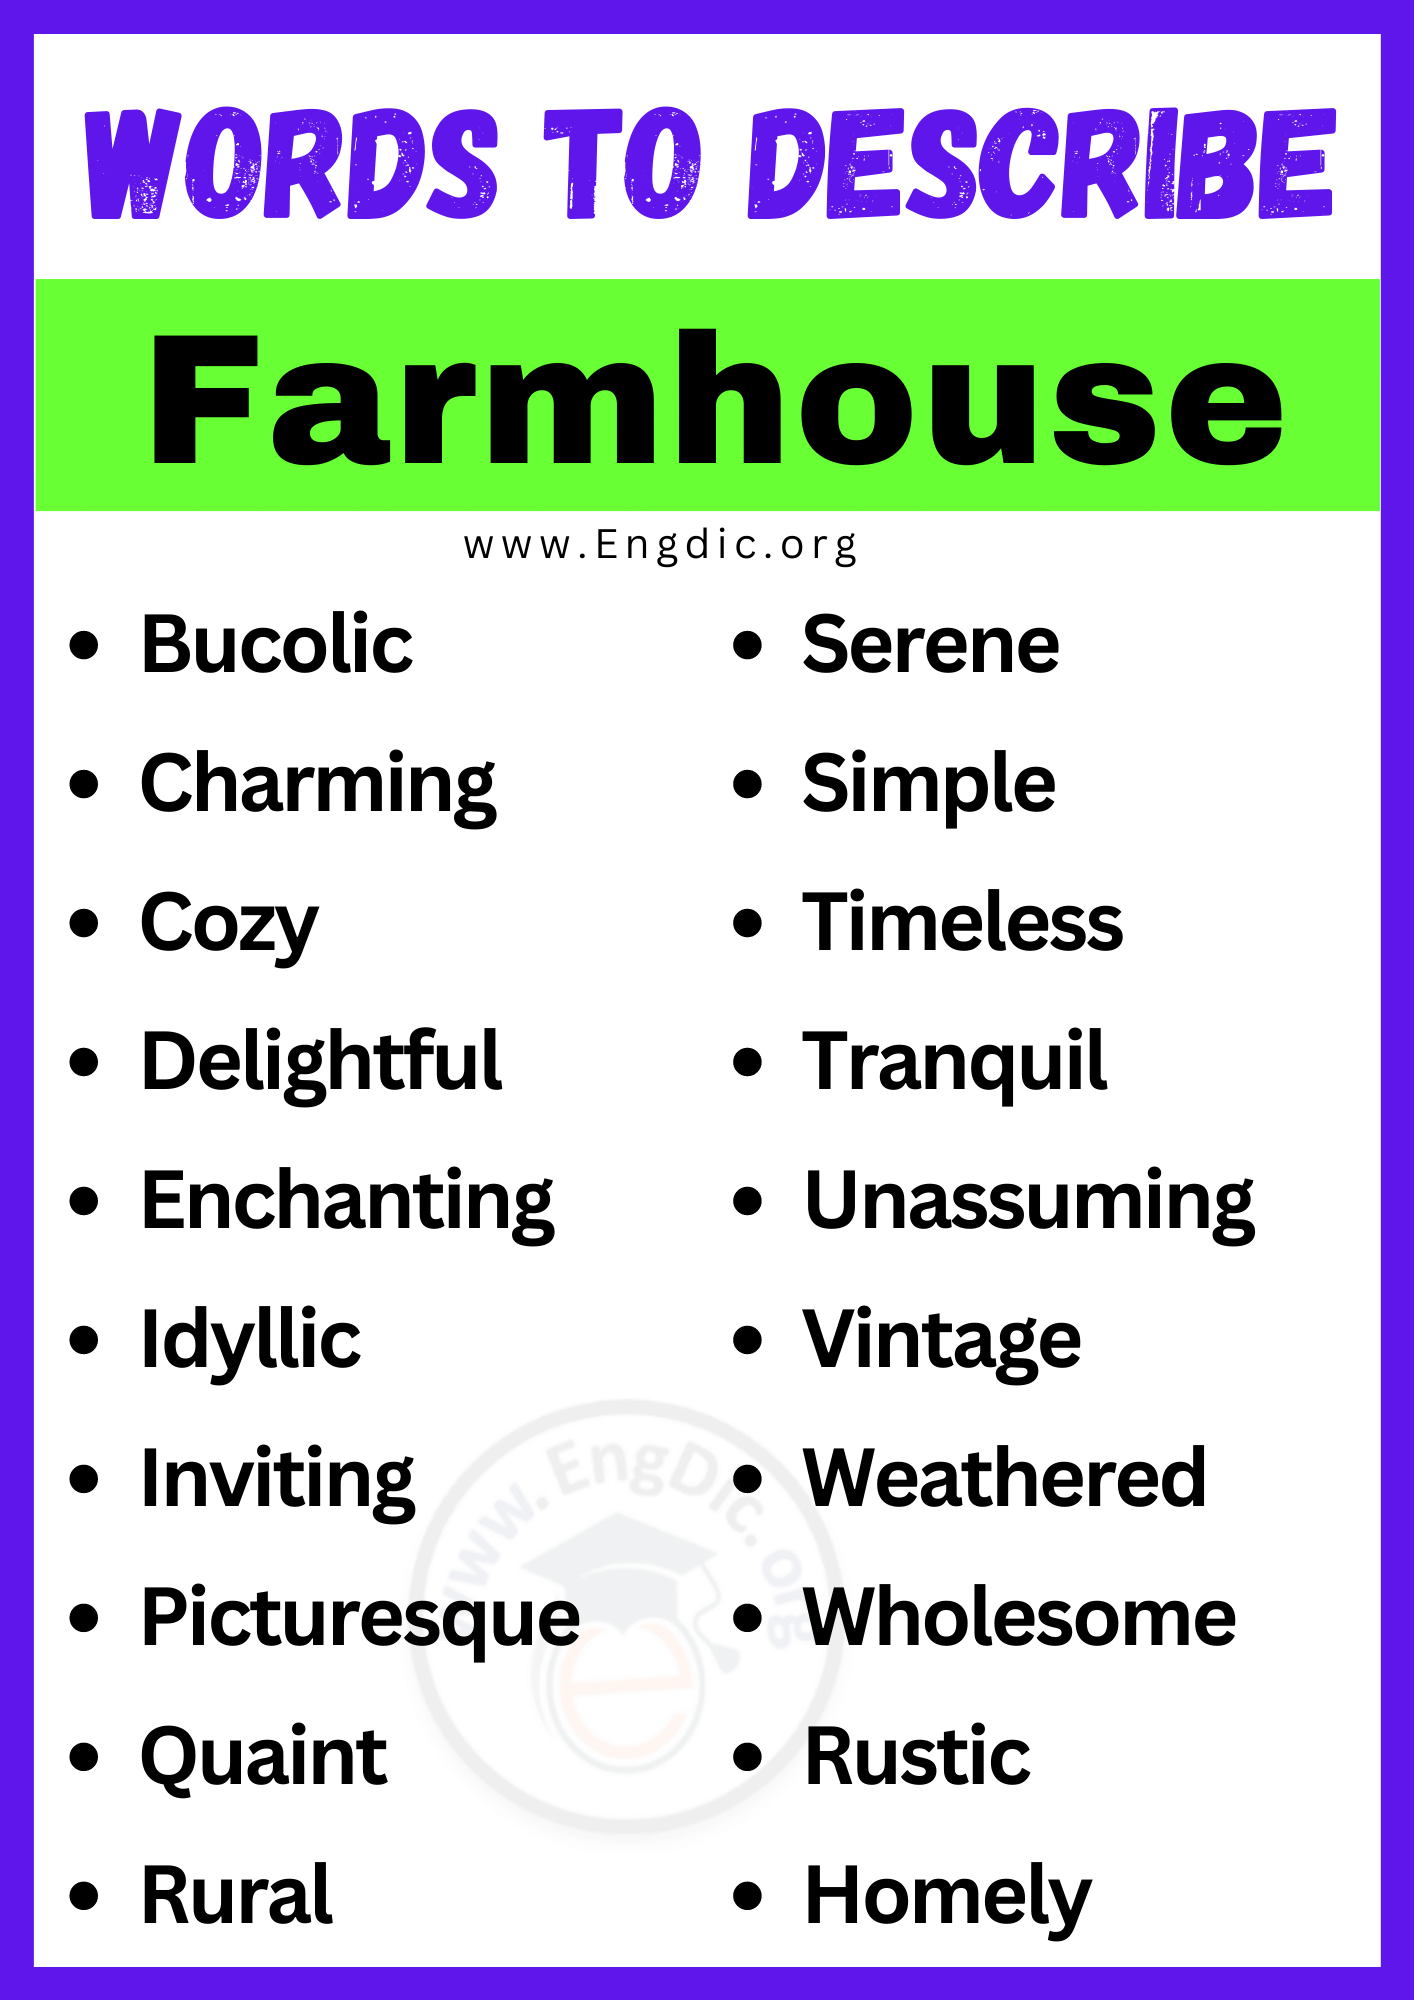 Words to Describe Farmhouse